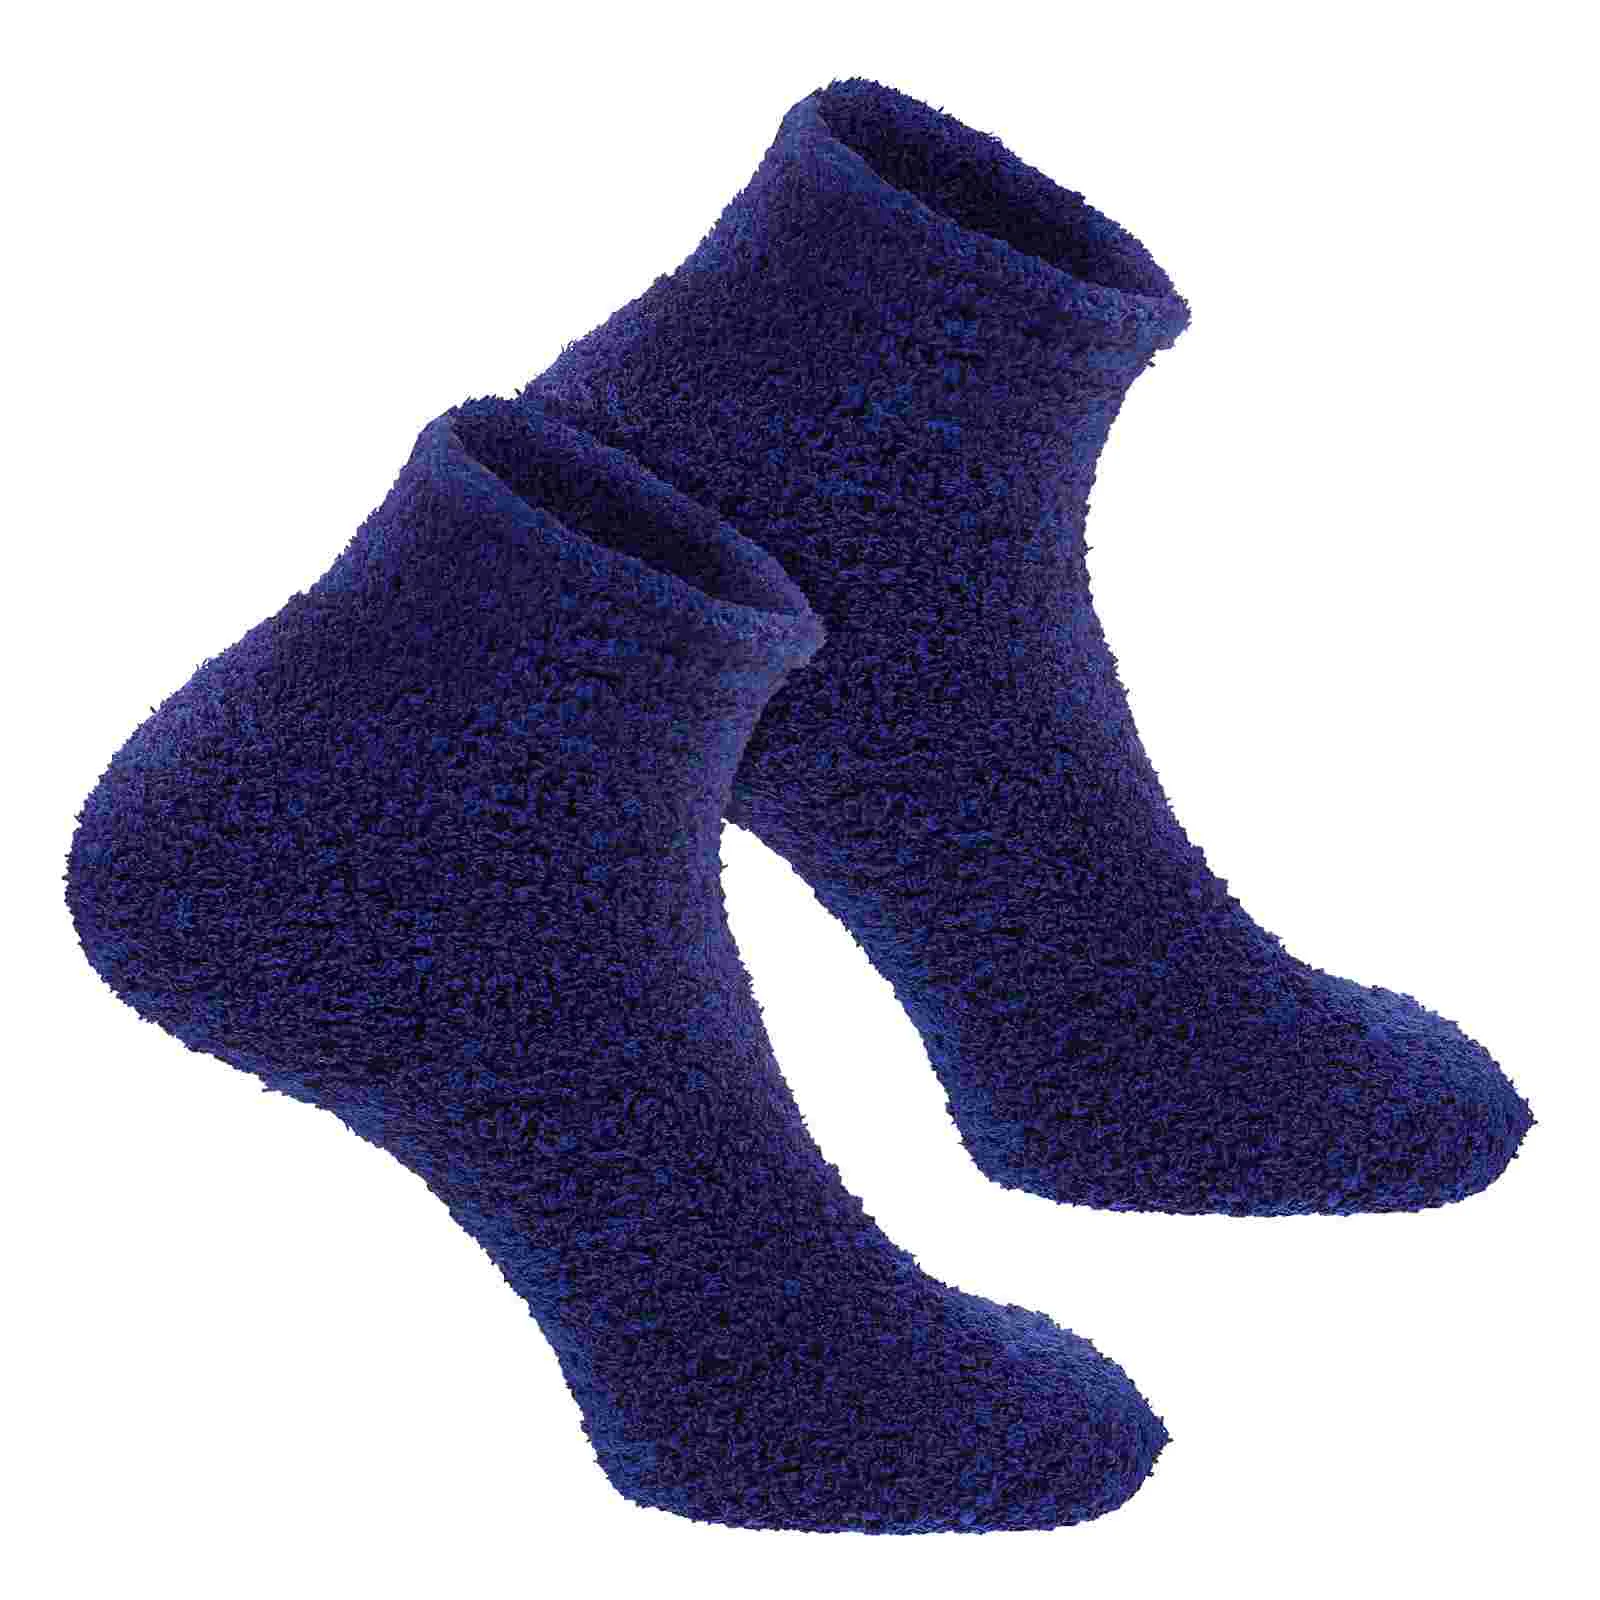 

Тапочки Пушистые Теплые Зимние флисовые чулки для сна пушистые тапочки женские толстые носки кашемировые